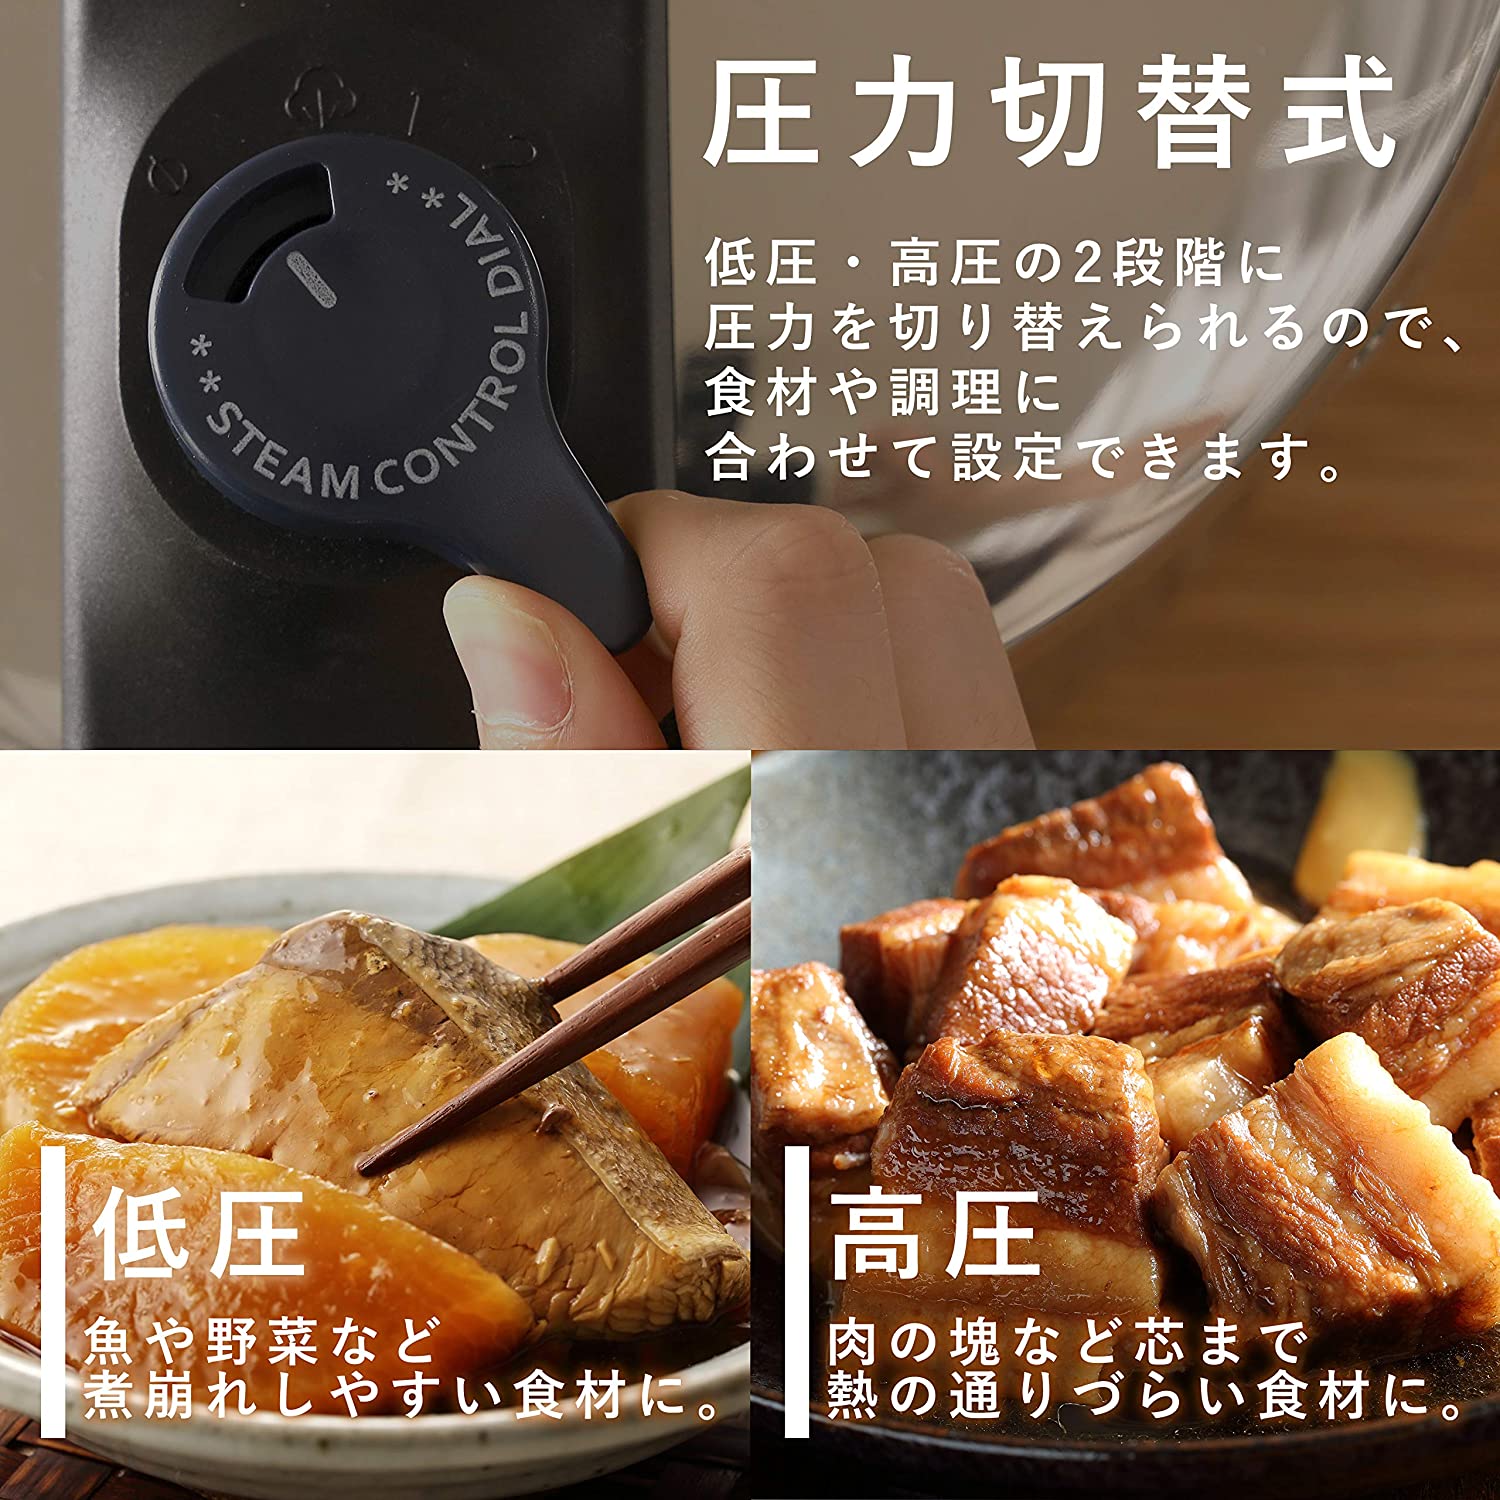 Nồi áp suất dùng bếp từ Quick Eco (4.5L & 5.5L) hàng nội địa Nhật Bản - hàng chính hãng